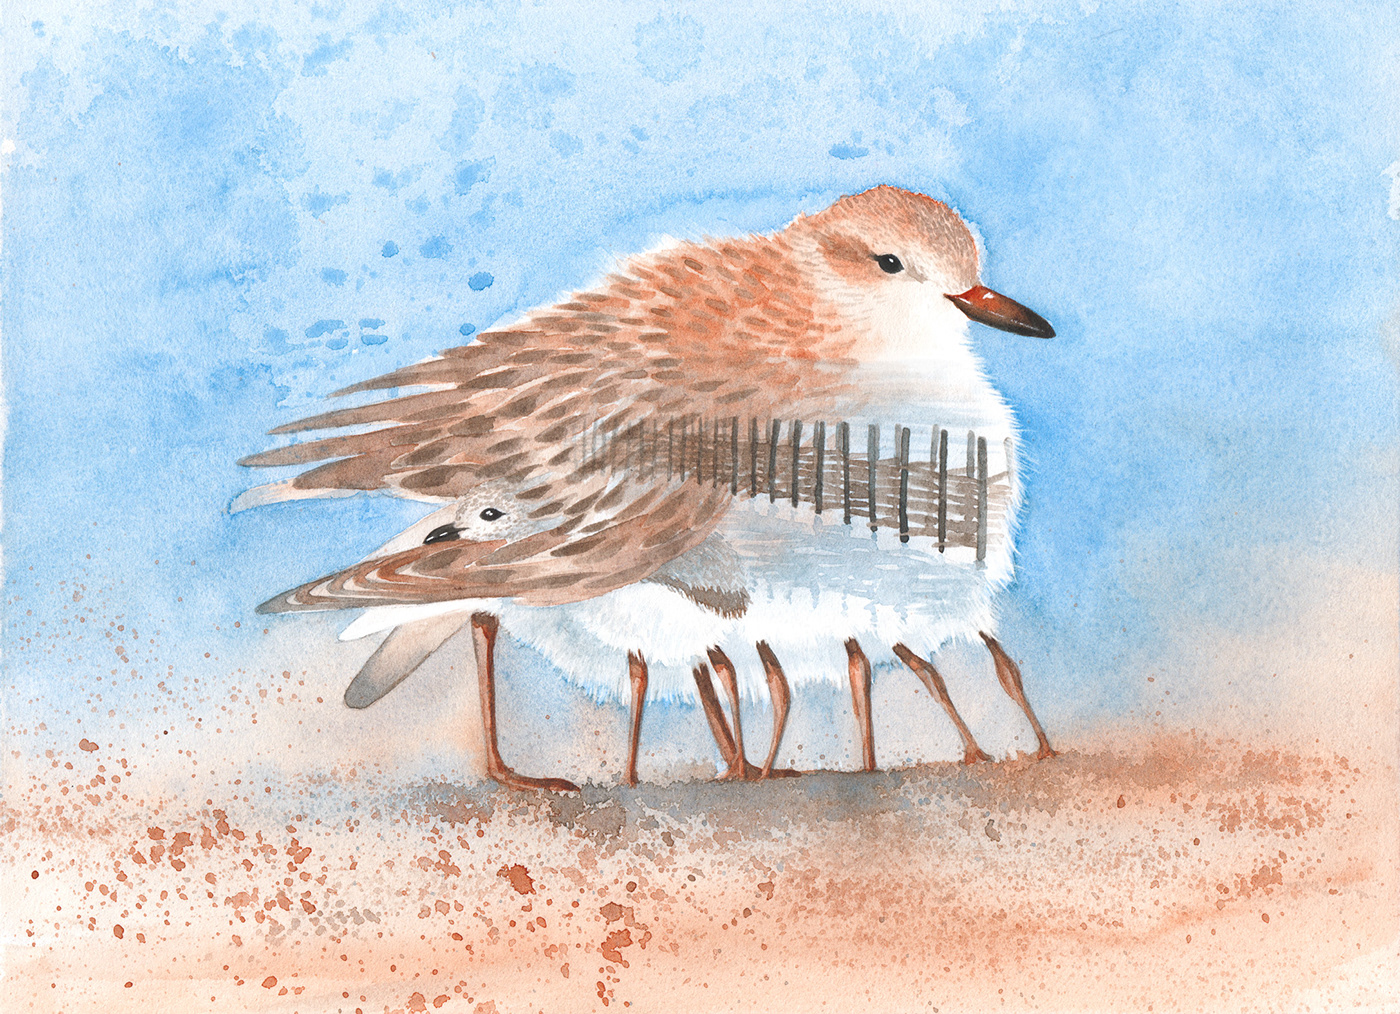 mangrove watercolor painting   birds wildlife watercolor illustration Ocean Island colombia punta soldado